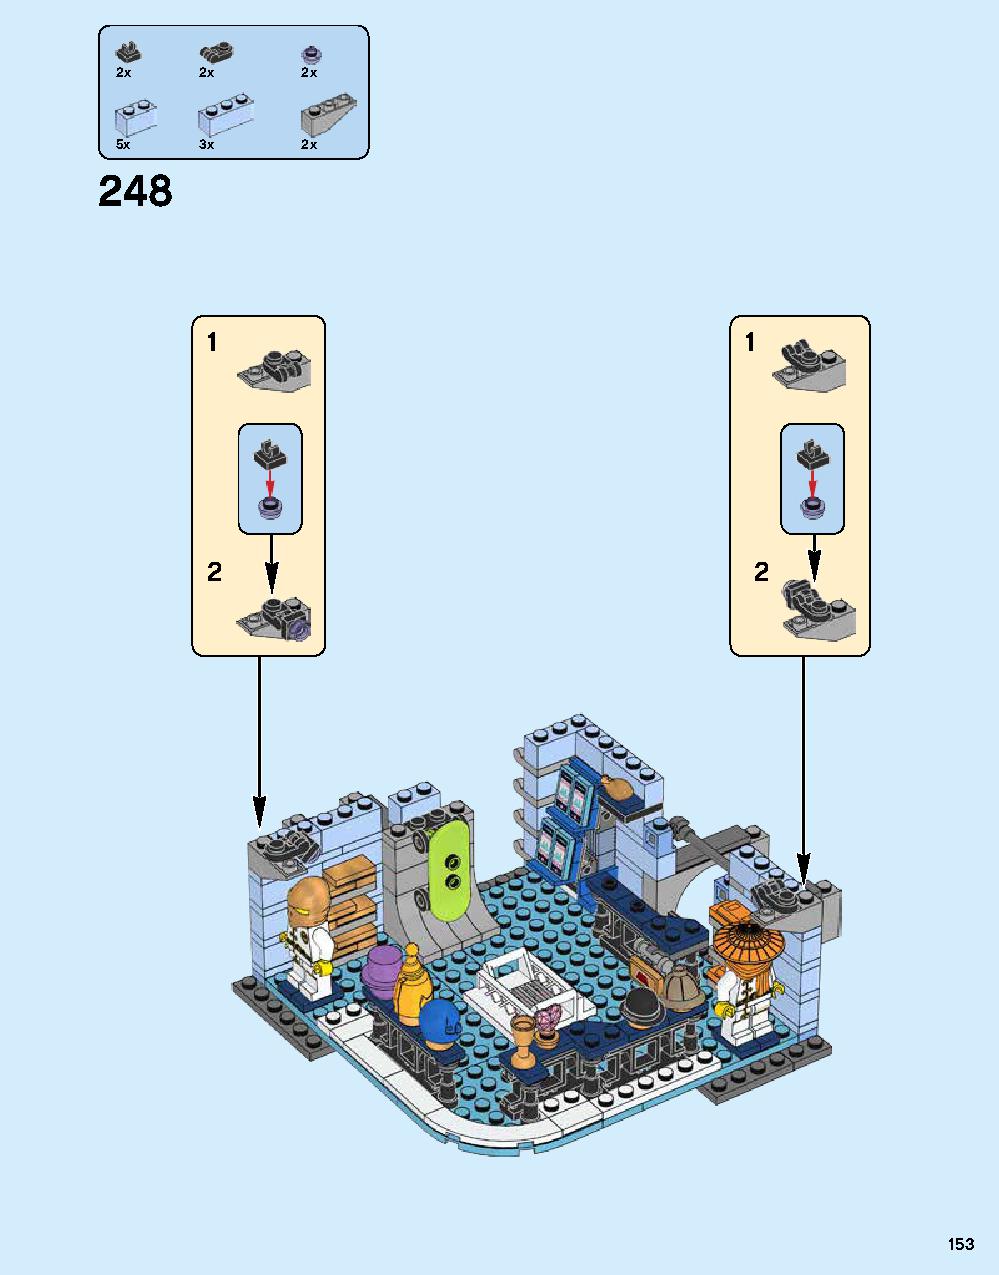 ニンジャゴー シティ 70620 レゴの商品情報 レゴの説明書・組立方法 153 page